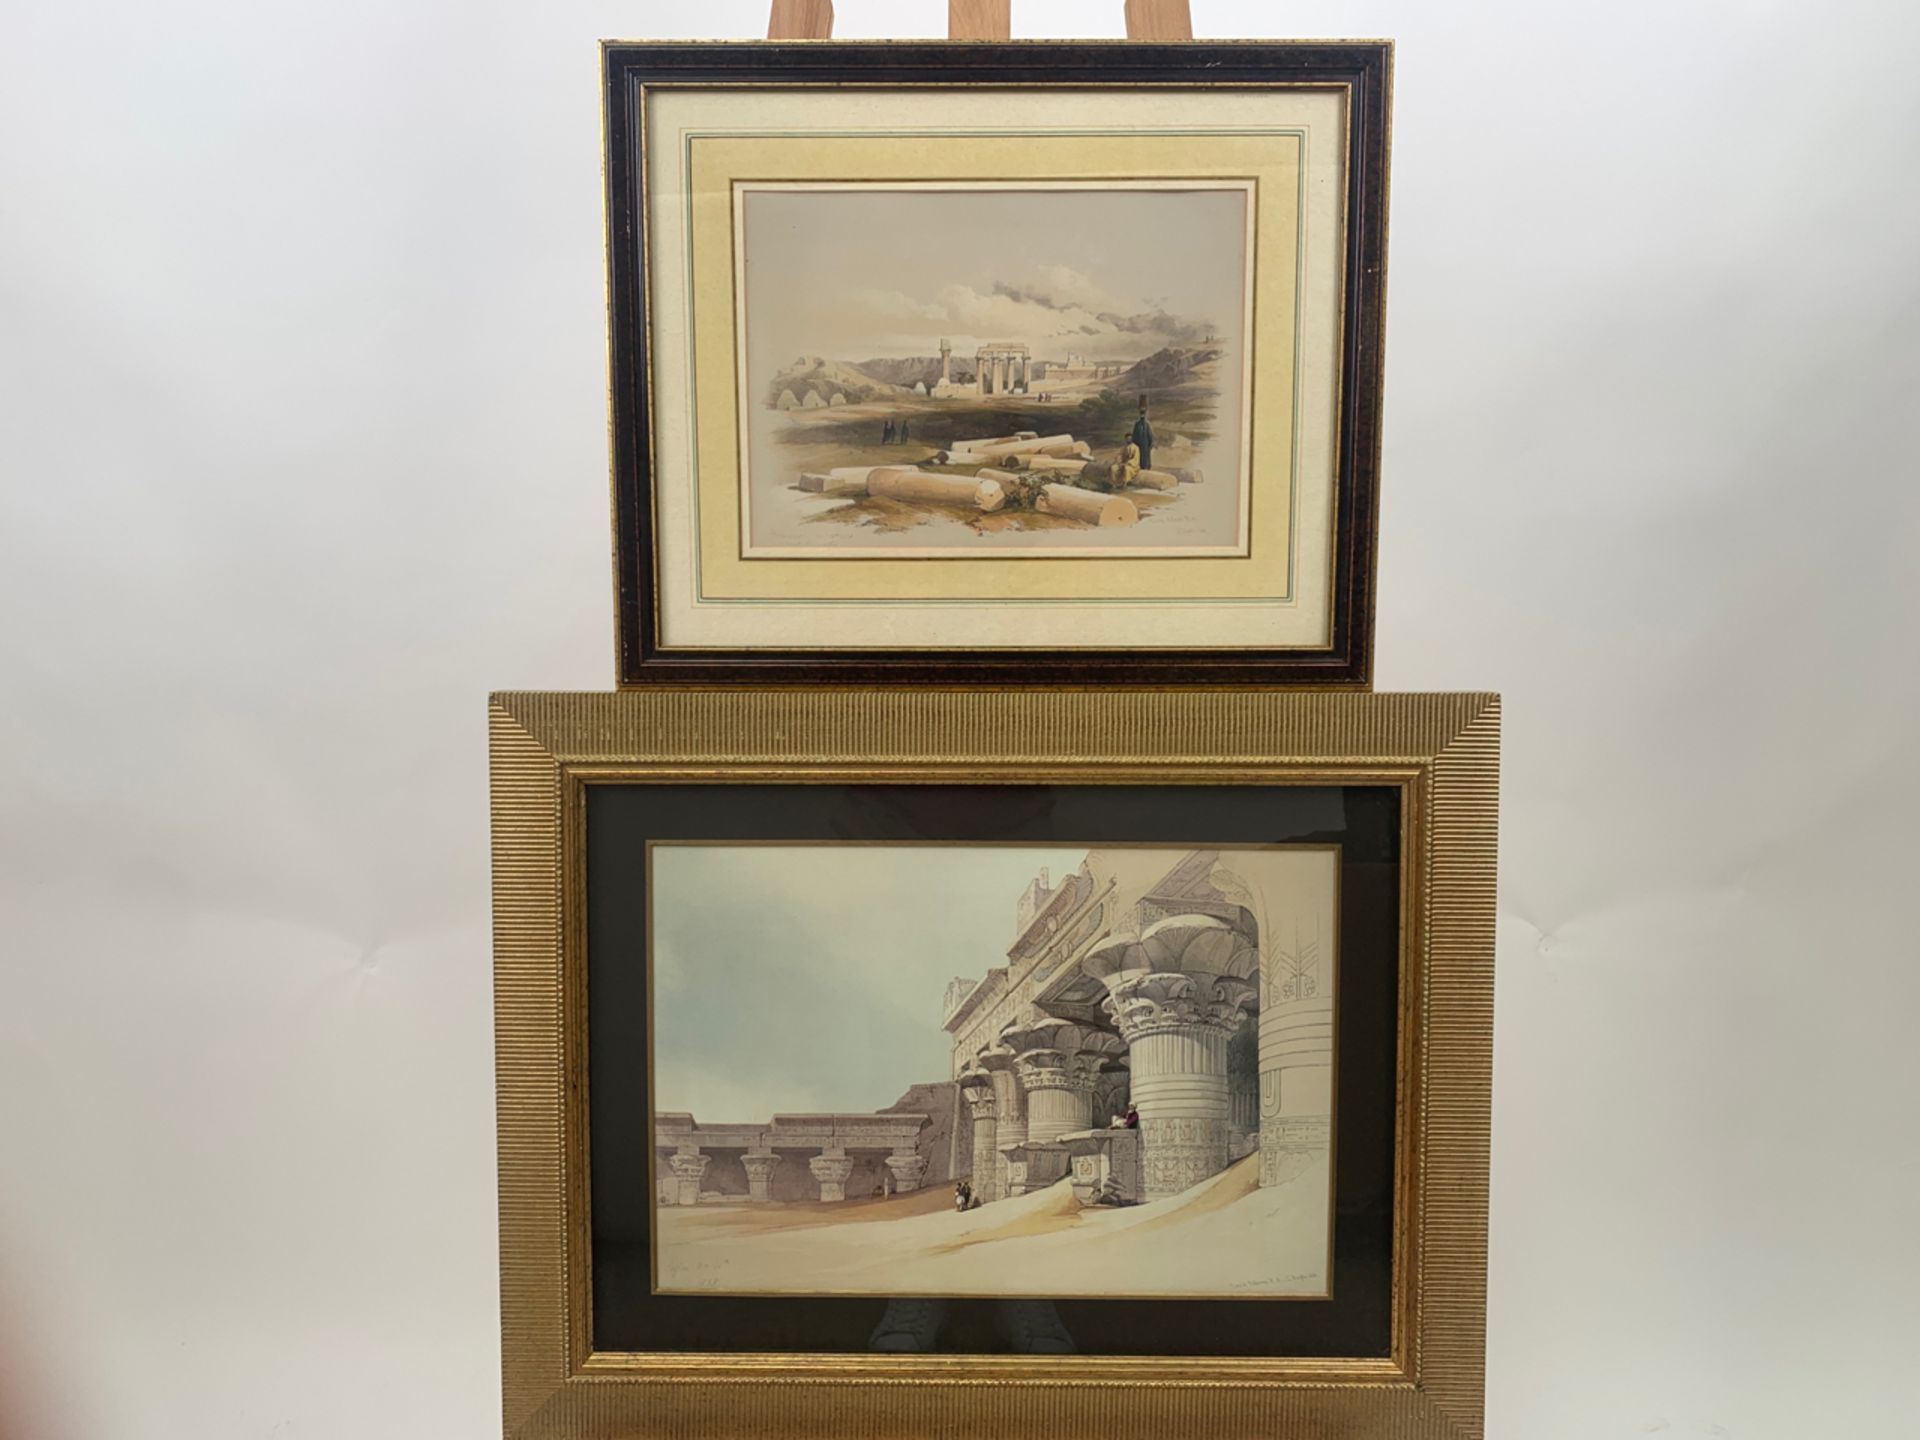 Set of 3 Various Framed Prints